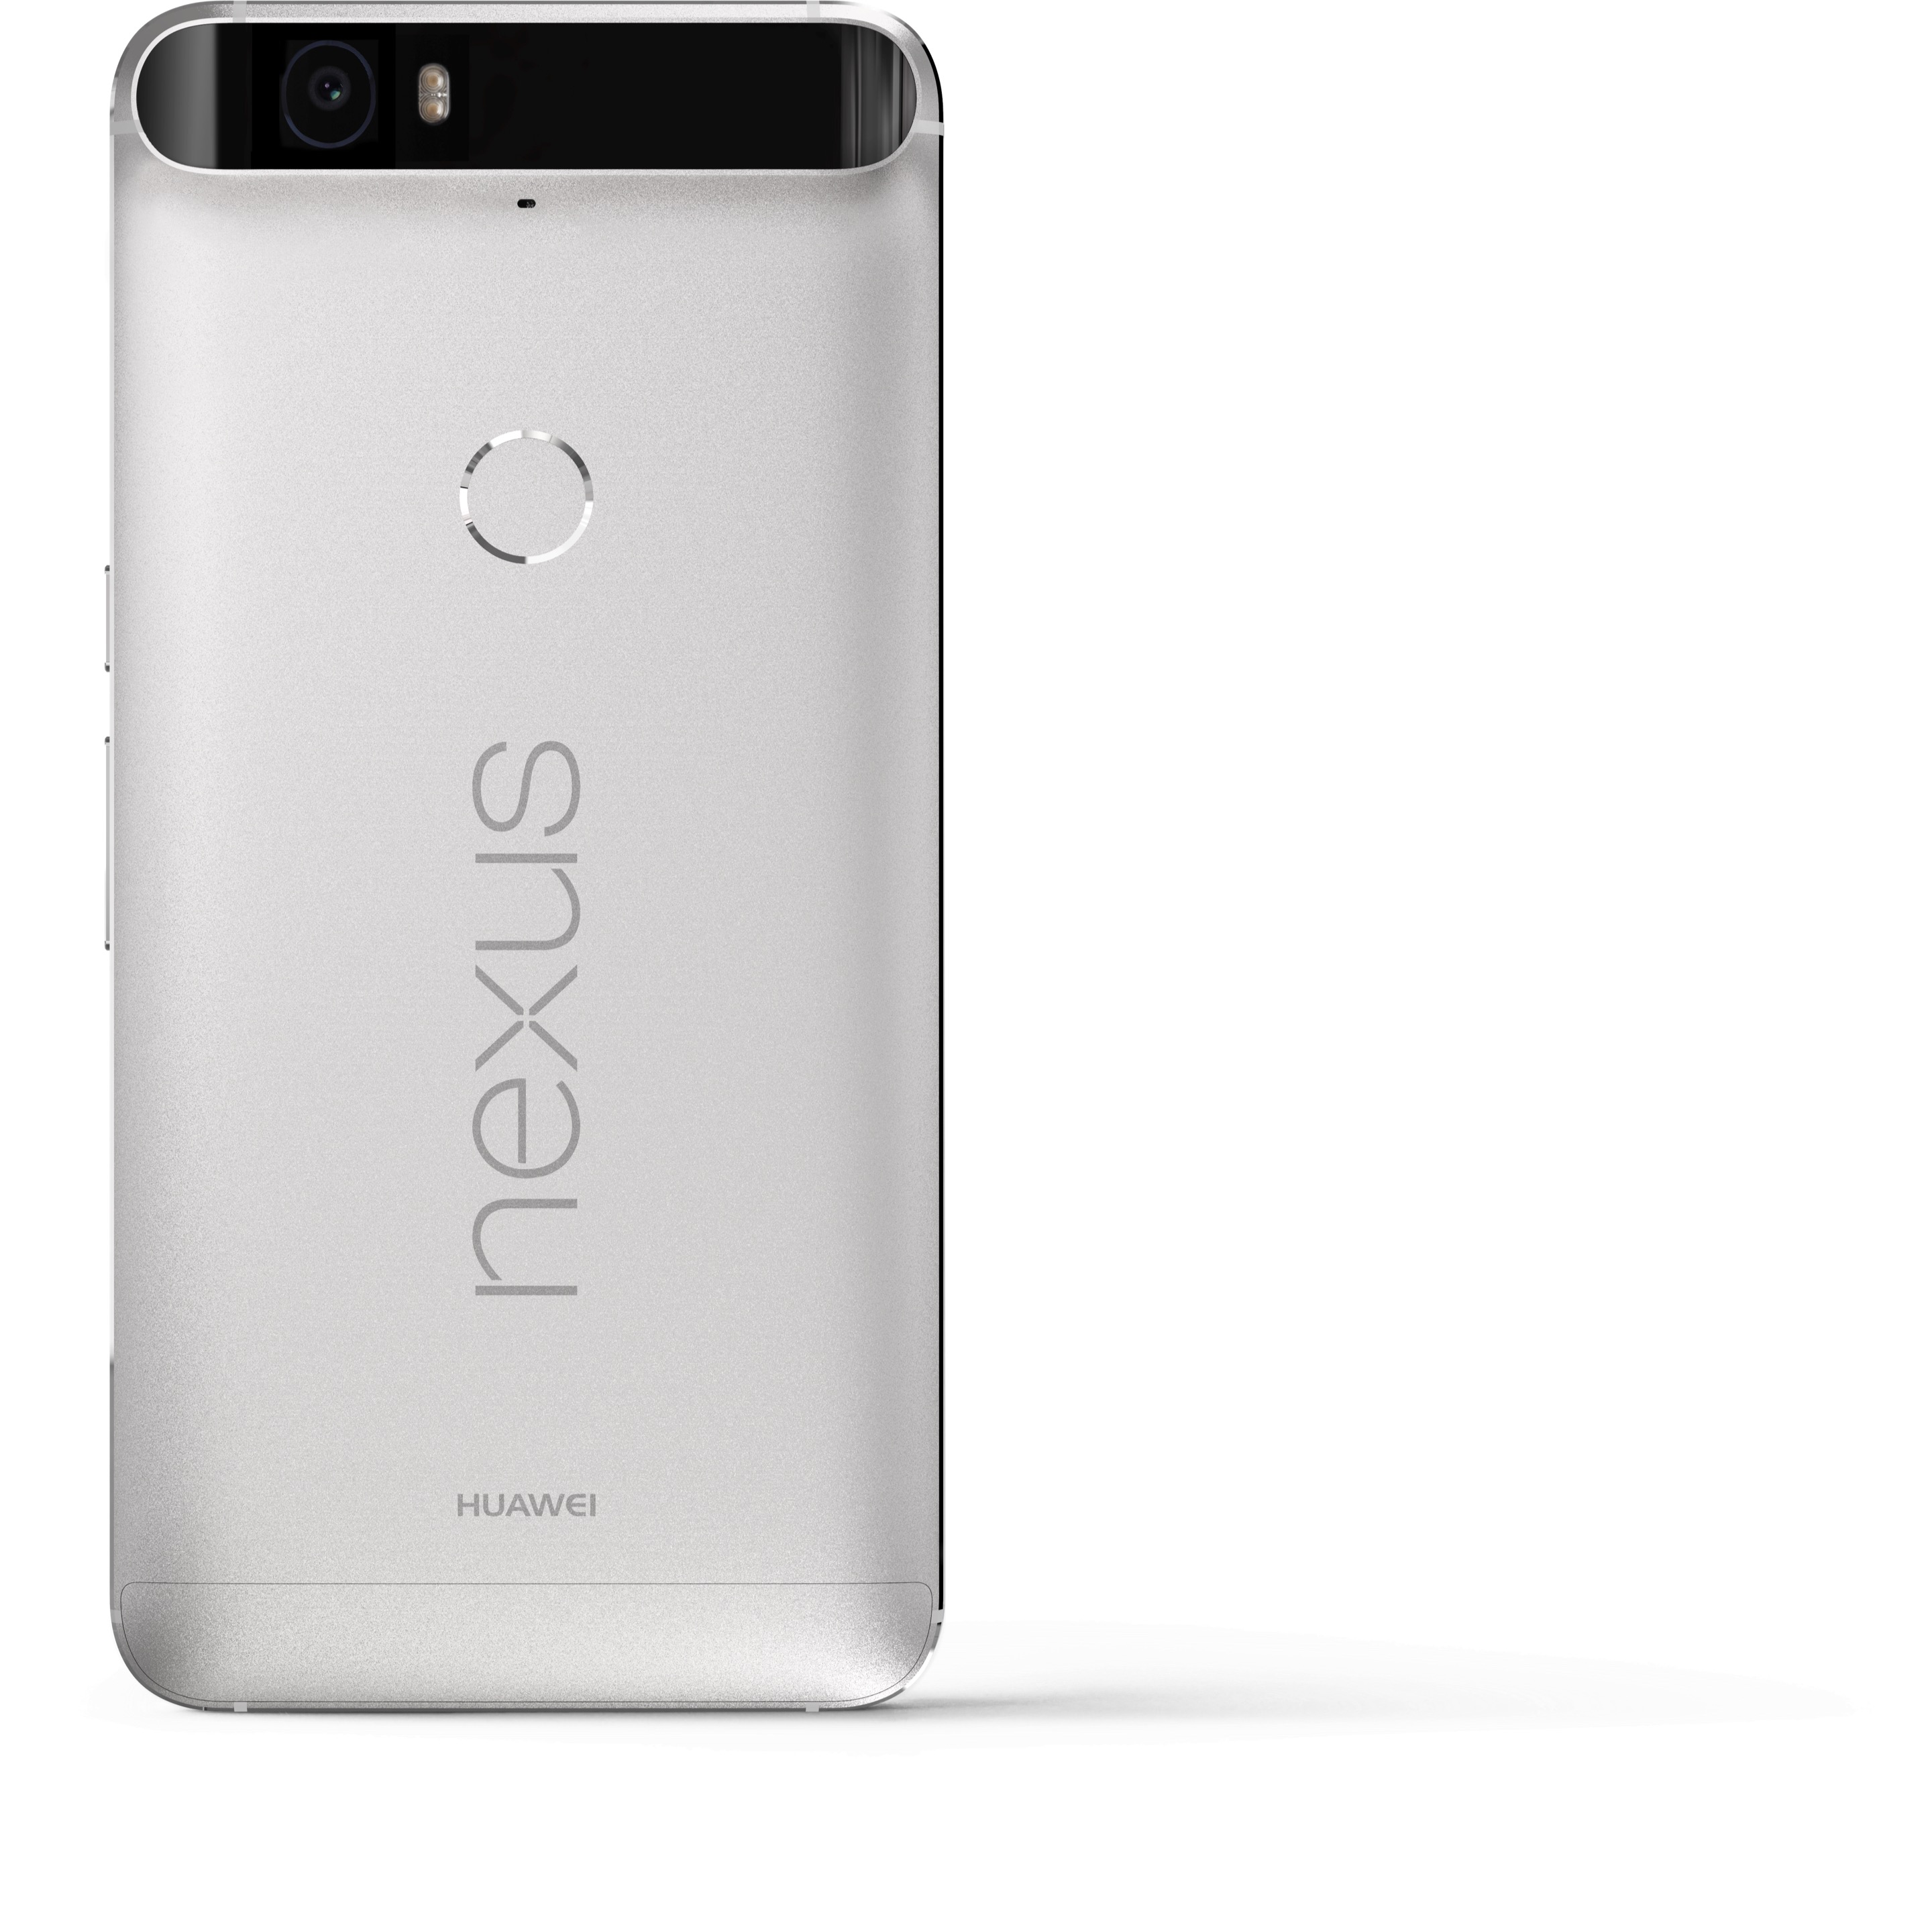 Huawei Nexus 6P es presentado oficialmente